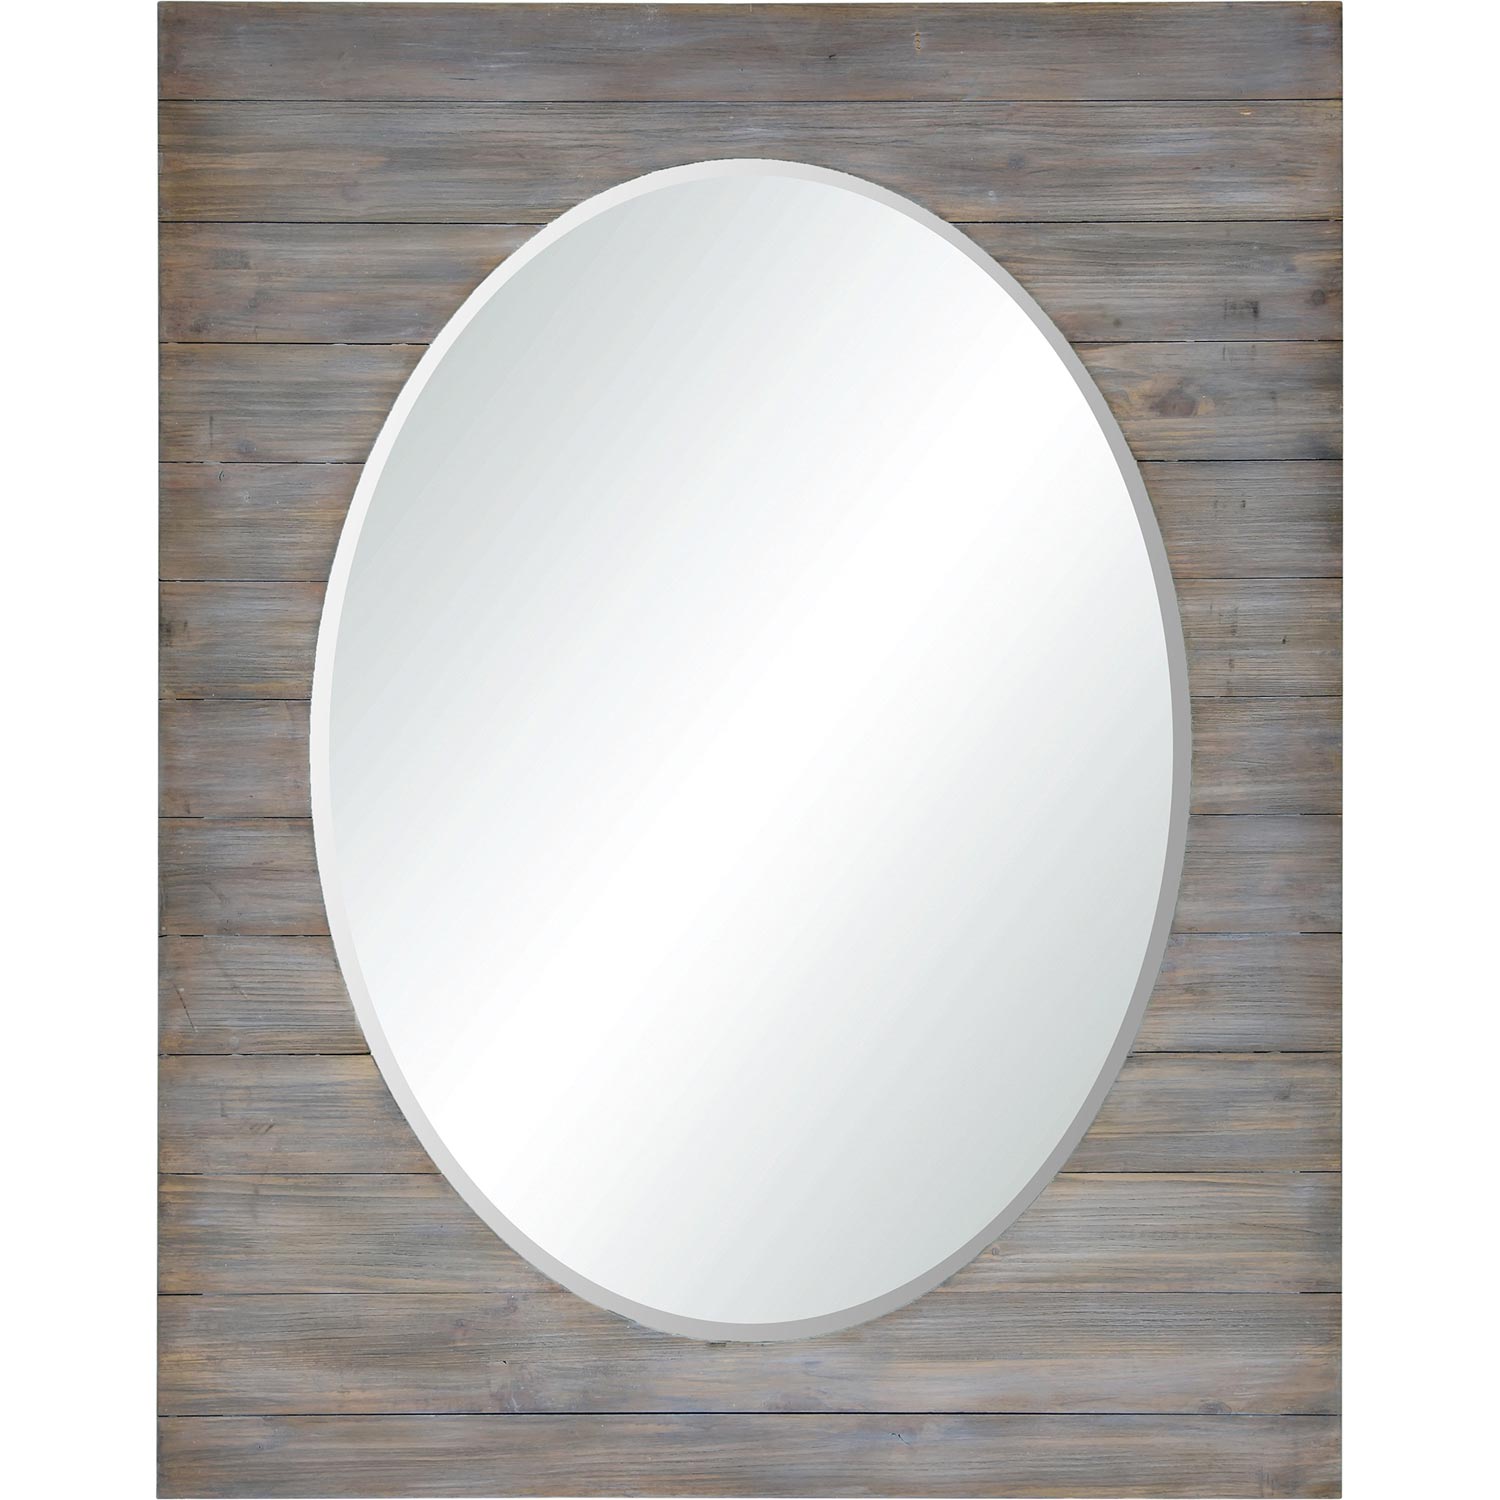 Ren-Wil Keenan Rectangle Mirror - Gray Wash